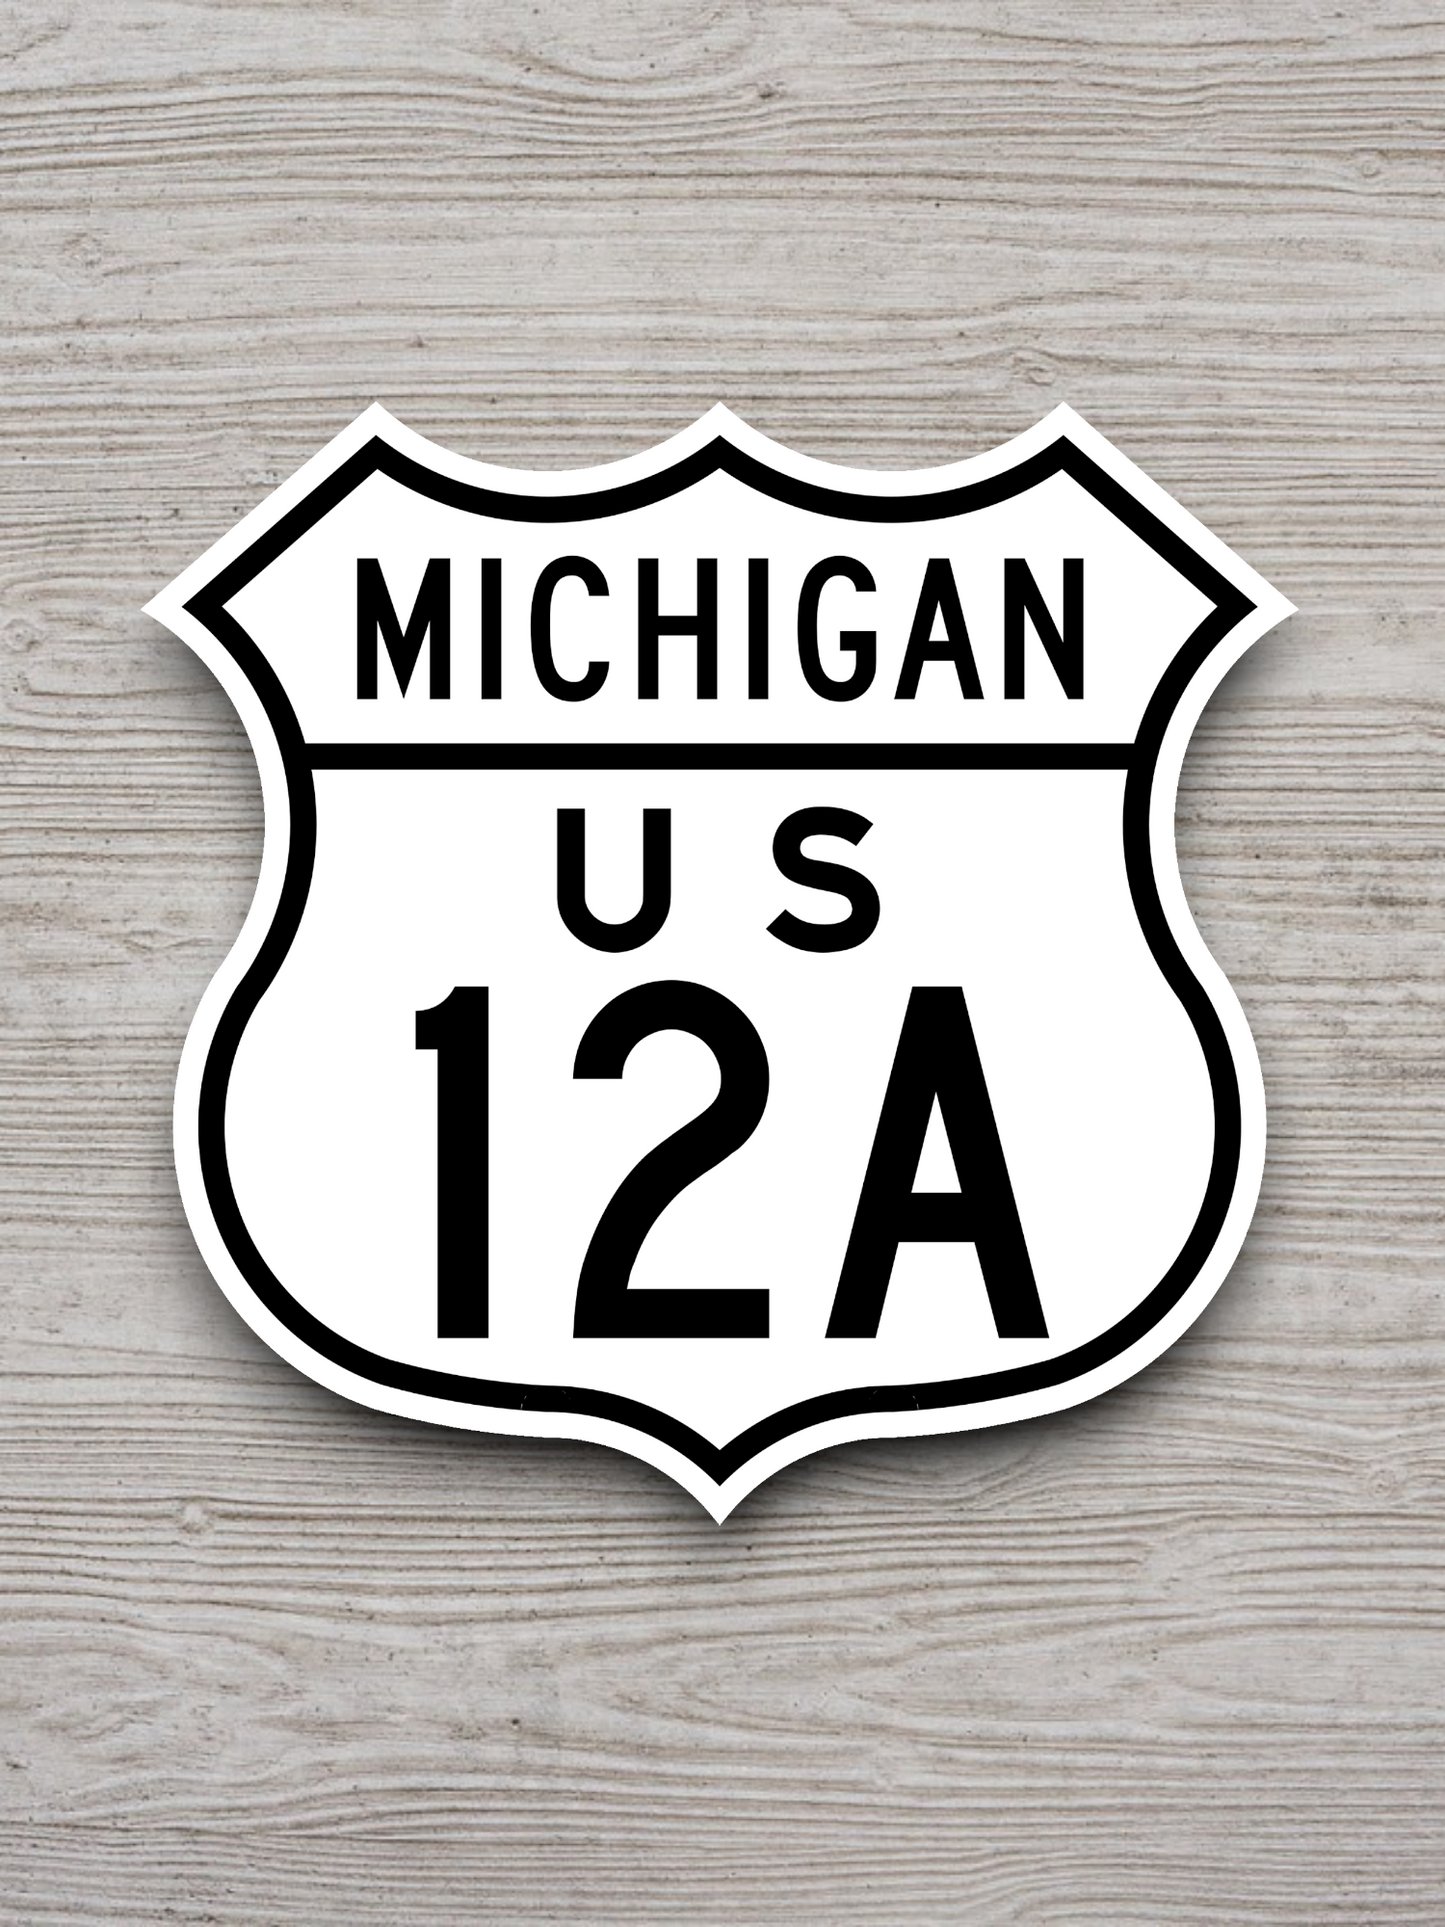 U.S. Route 12A Michigan Road Sign Sticker